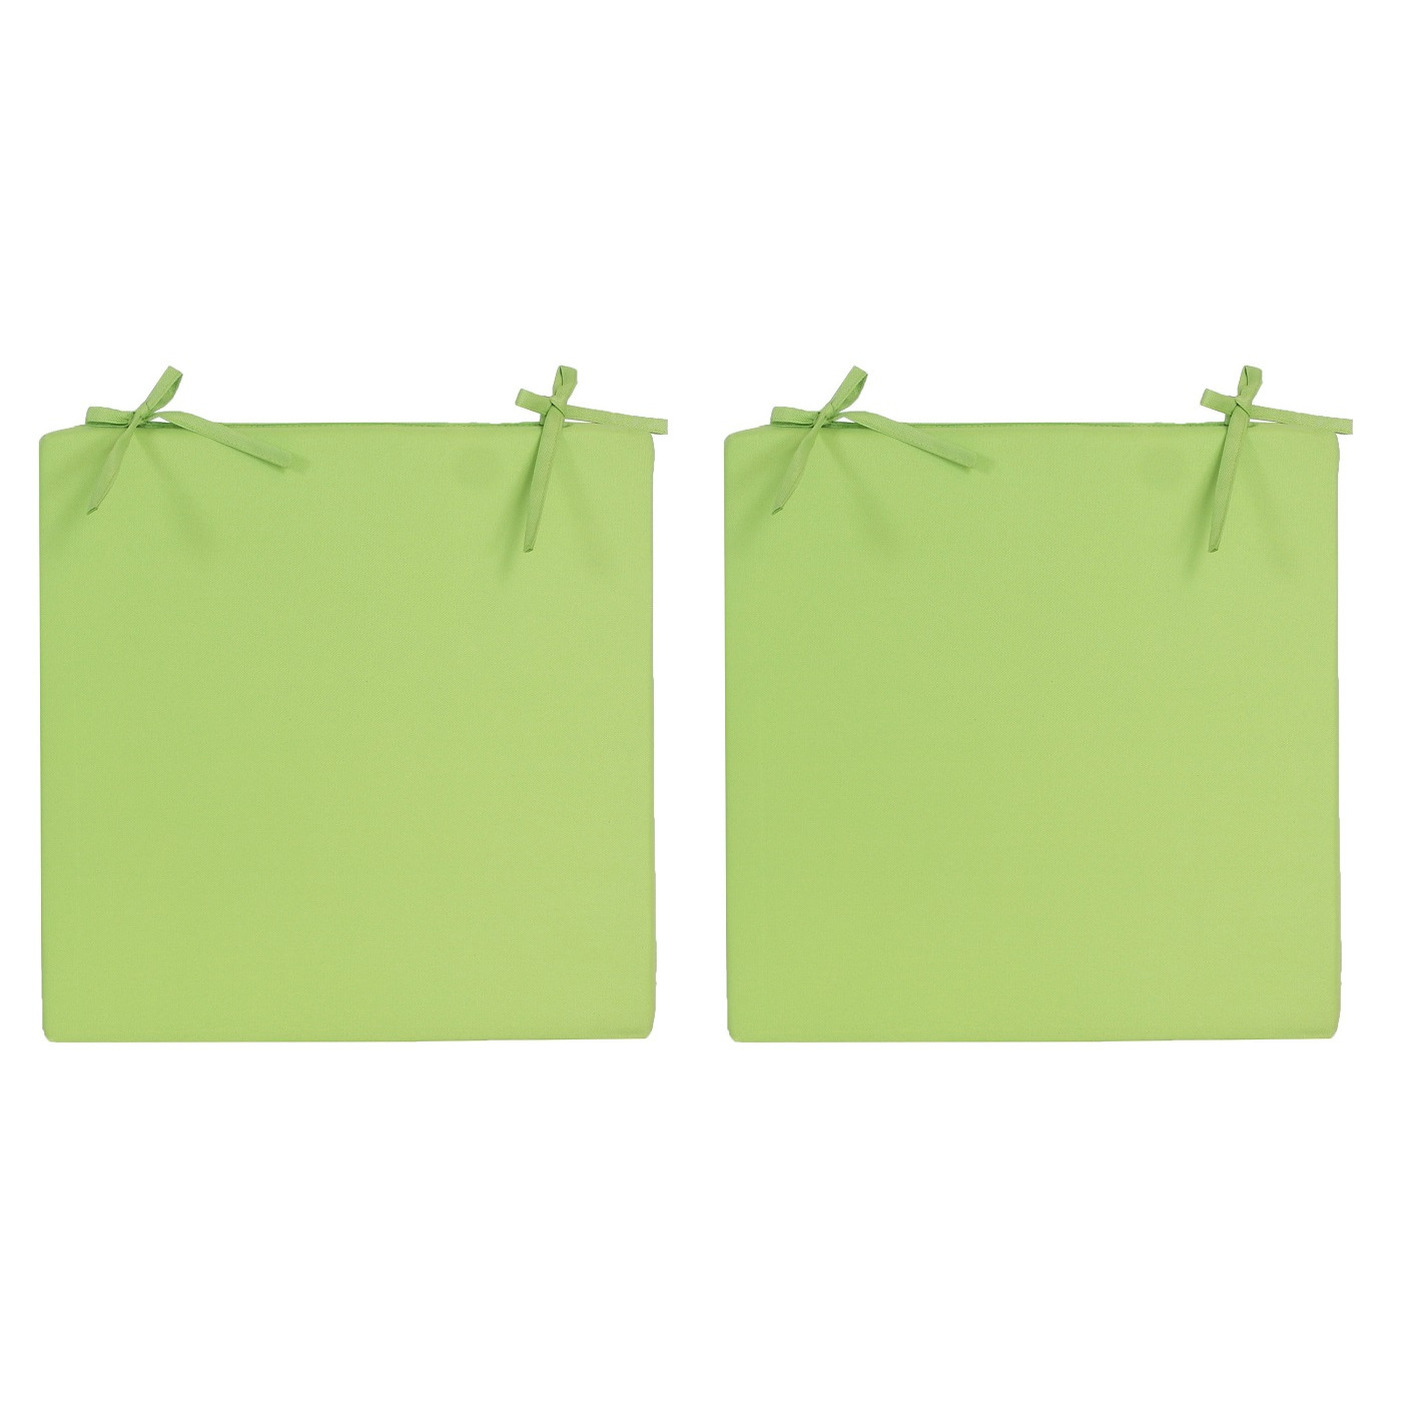 2x Stoelkussens voor binnen en buiten in de kleur groen 40 x 40 cm Tuinkussens voor buitenstoelen.